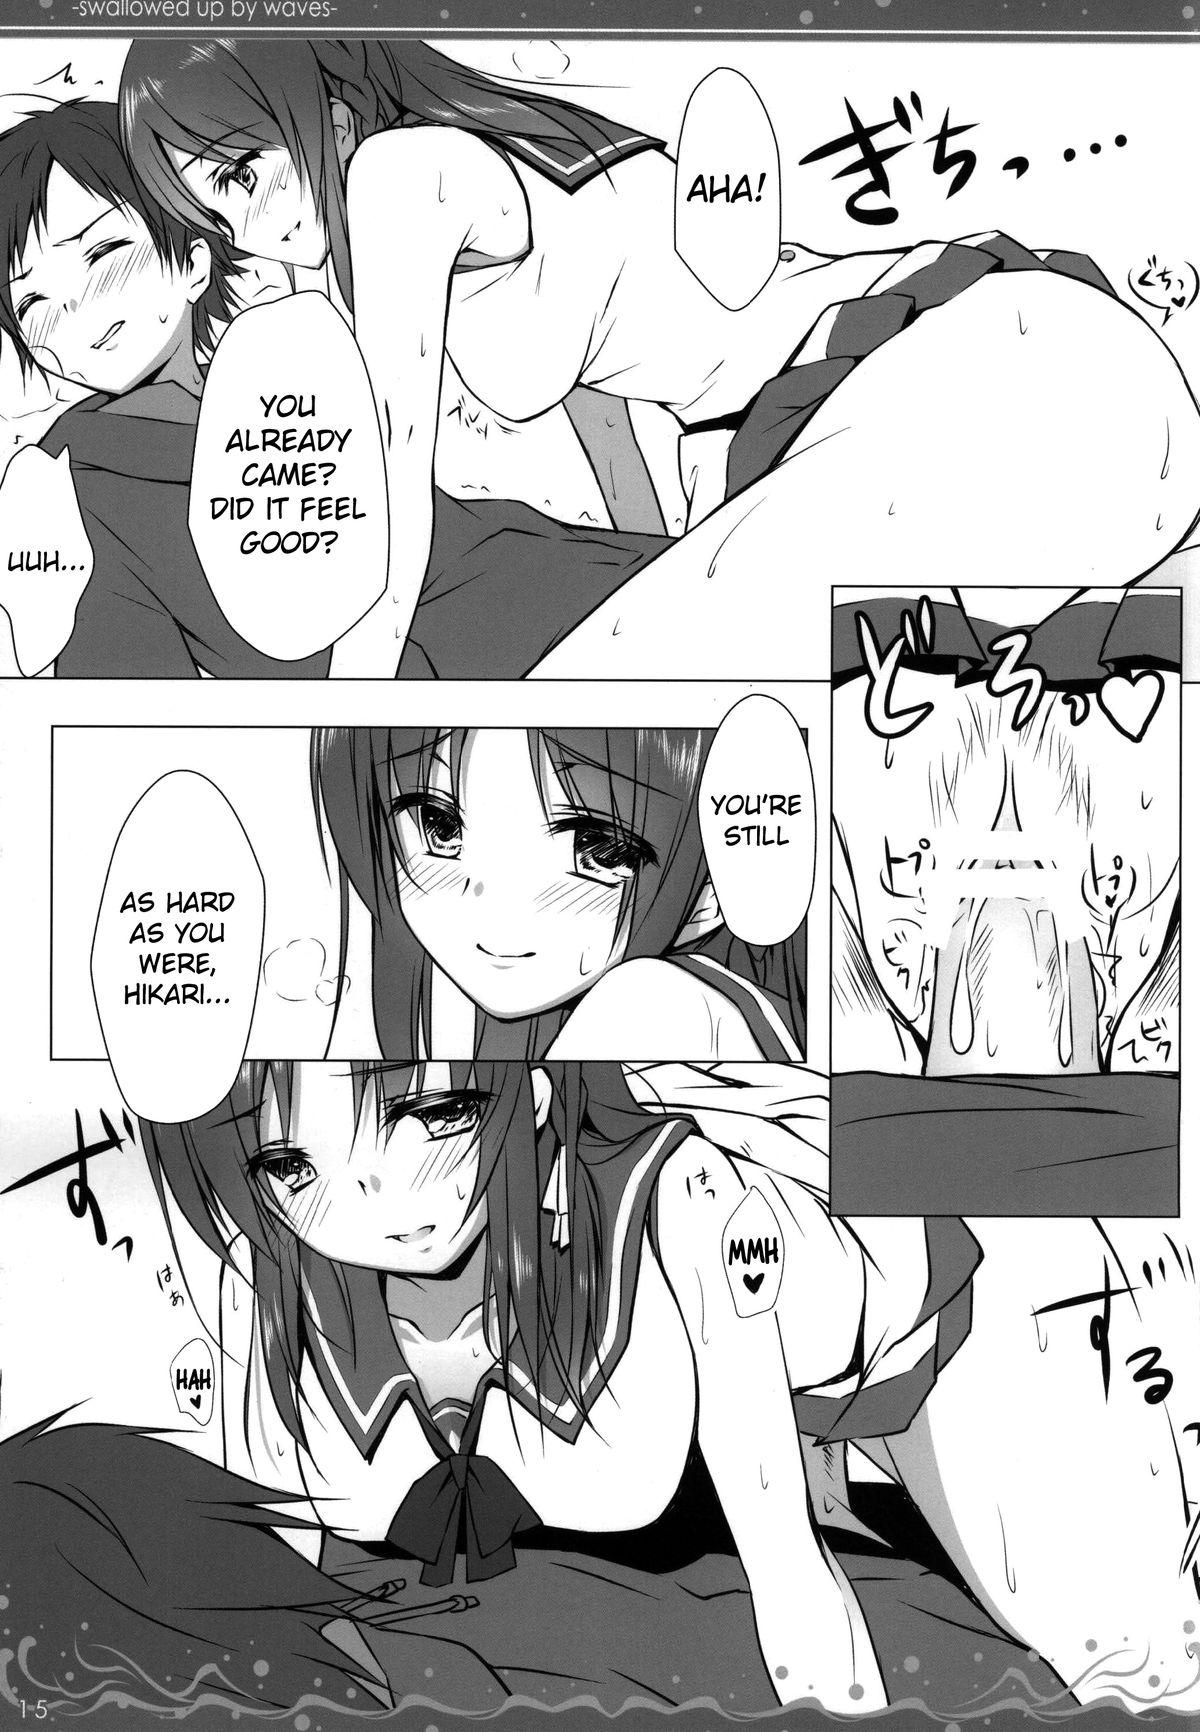 Girls Getting Fucked Nami Bakari no Umi no Naka | Swallowed Up by Waves - Nagi no asukara Mamada - Page 12